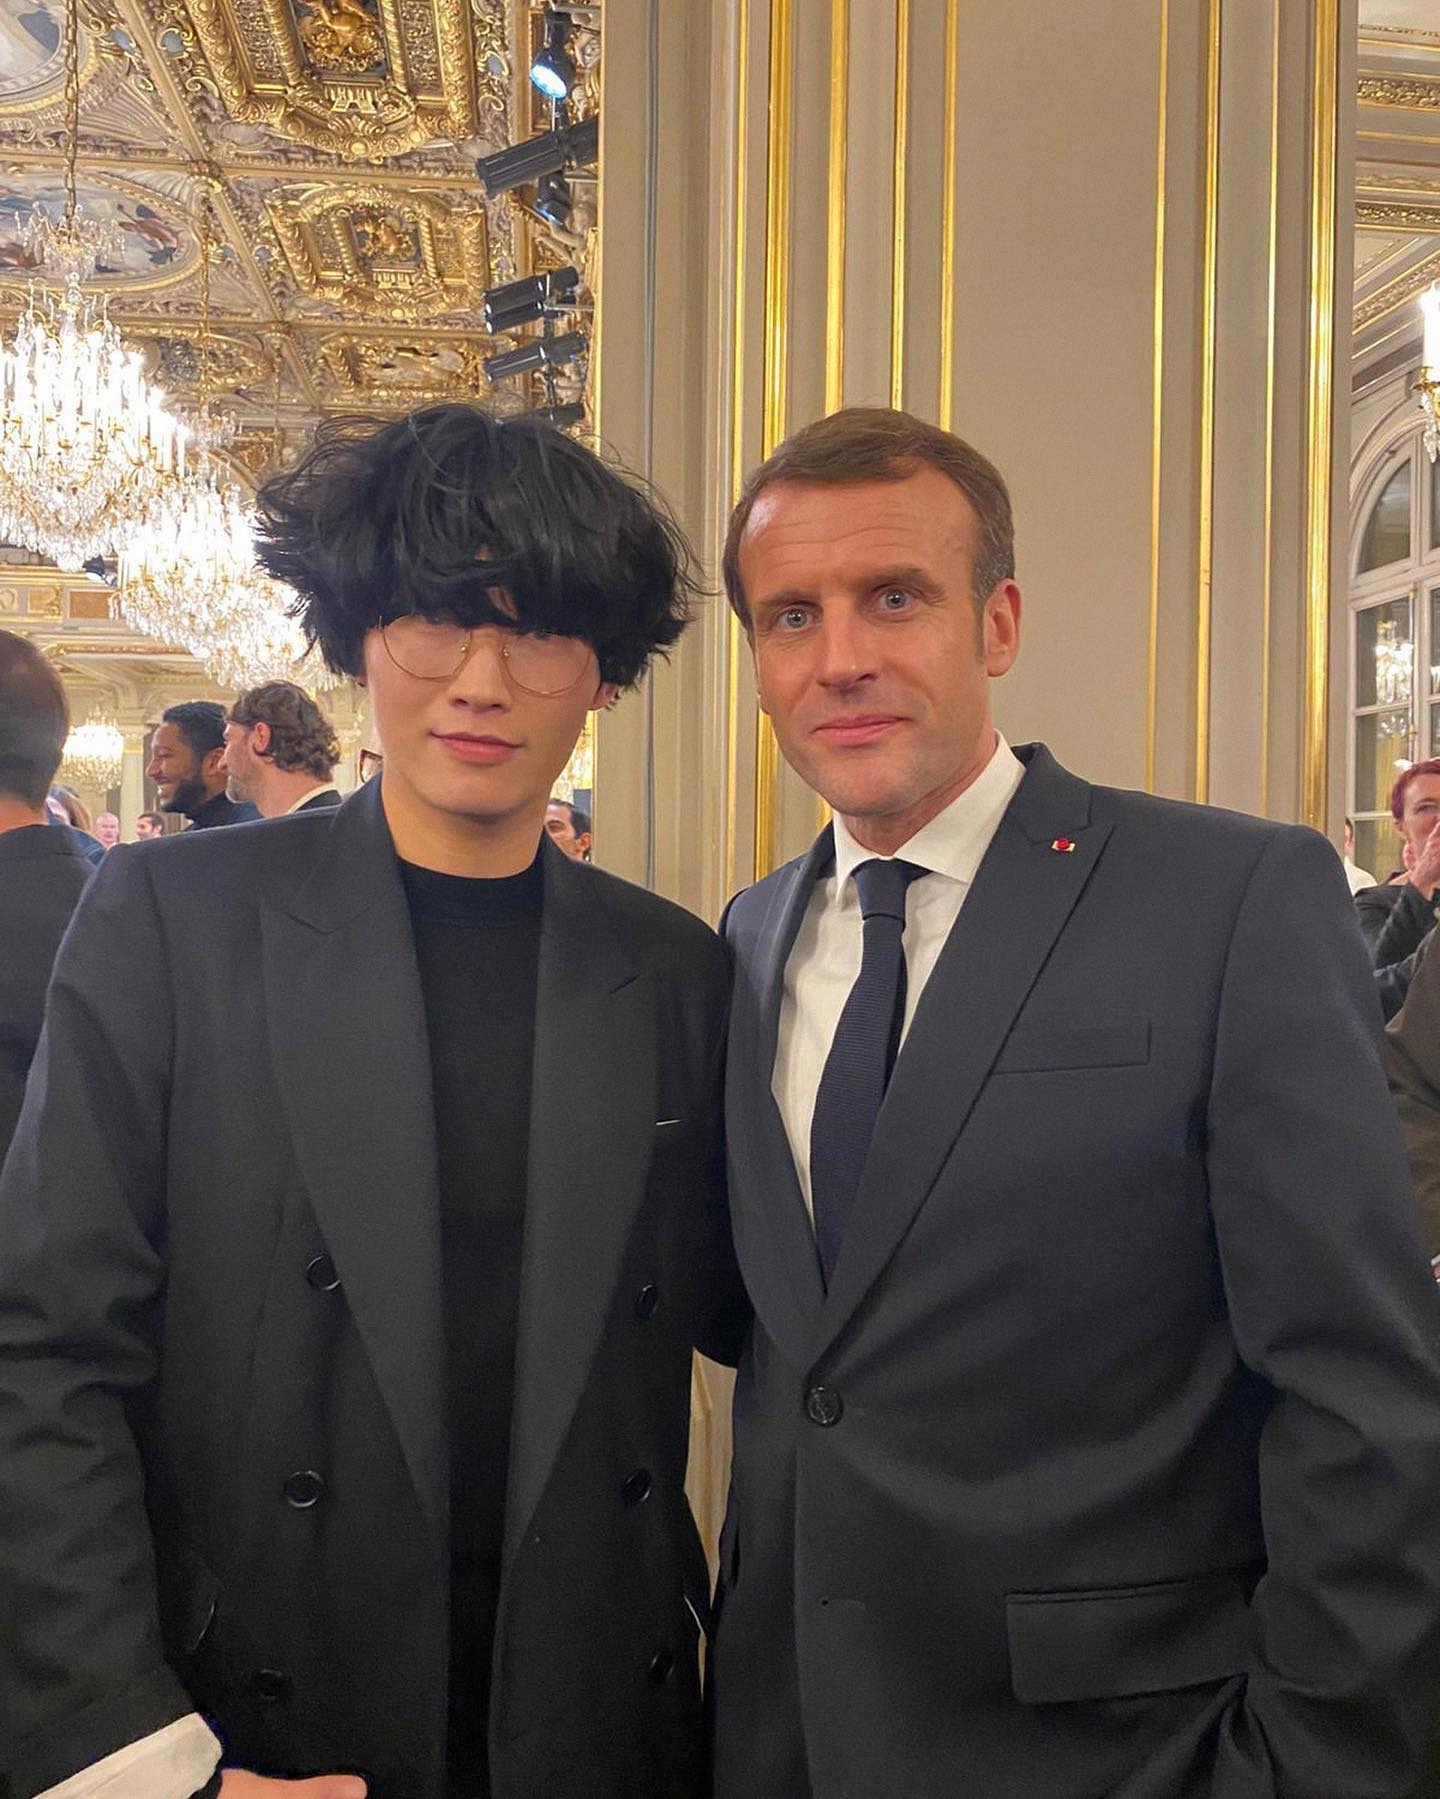 Kiminte Kimhekim en présence du Président de la République Emmanuel Macron. © Compte Instagram de Maison KIMHEKIM 